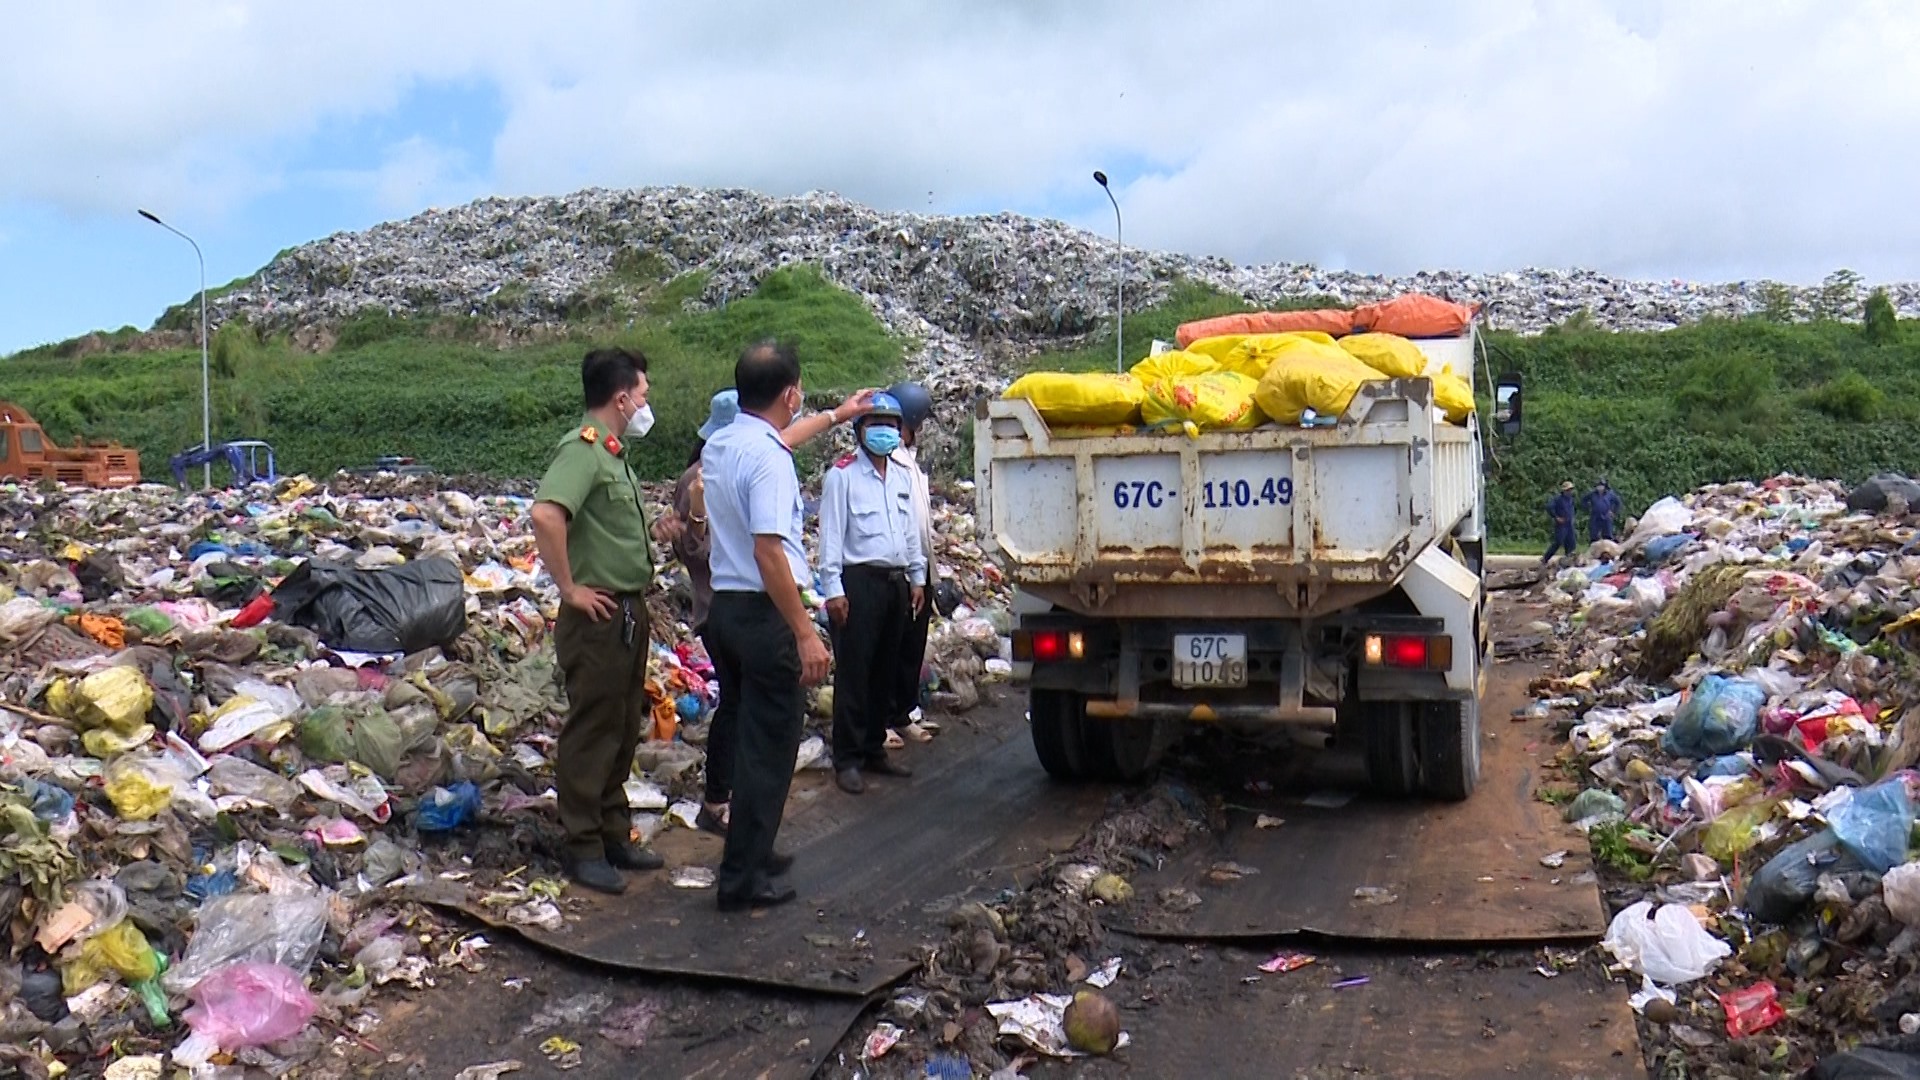 Hội đồng tiêu hủy thực hiện tiêu hủy hơn 6,5 tấn chả chay có chứa hàn the. Ảnh: NT